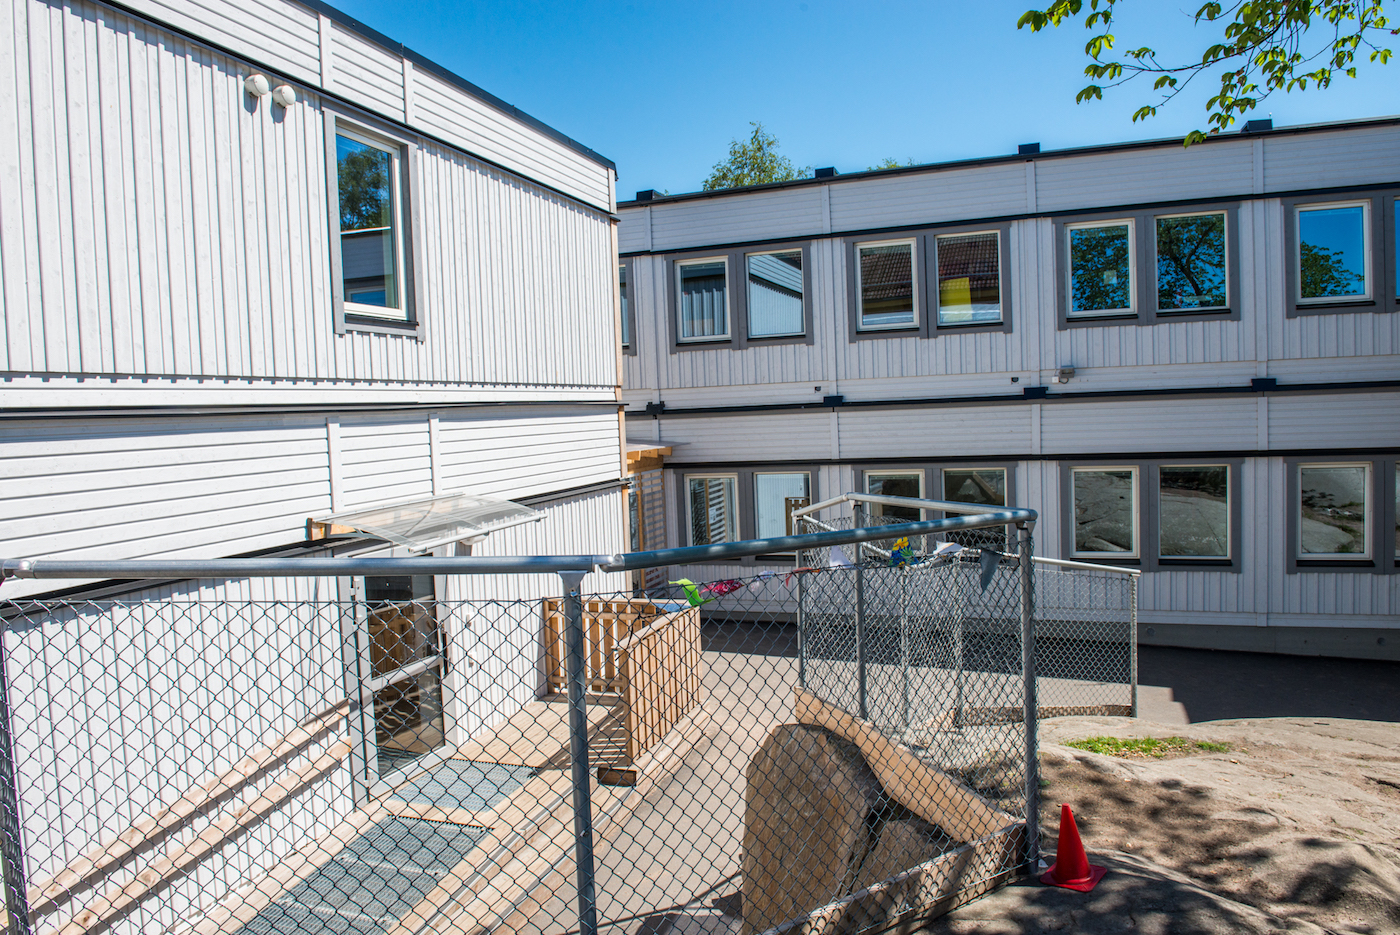 Nya Långedragsskolan är en modulmonterad tillfällig skola på totalt hela 1375 kvadratmeter i det fina, pittoreska villakvarteret Långedrag nära vackra Saltön i Göteborg.